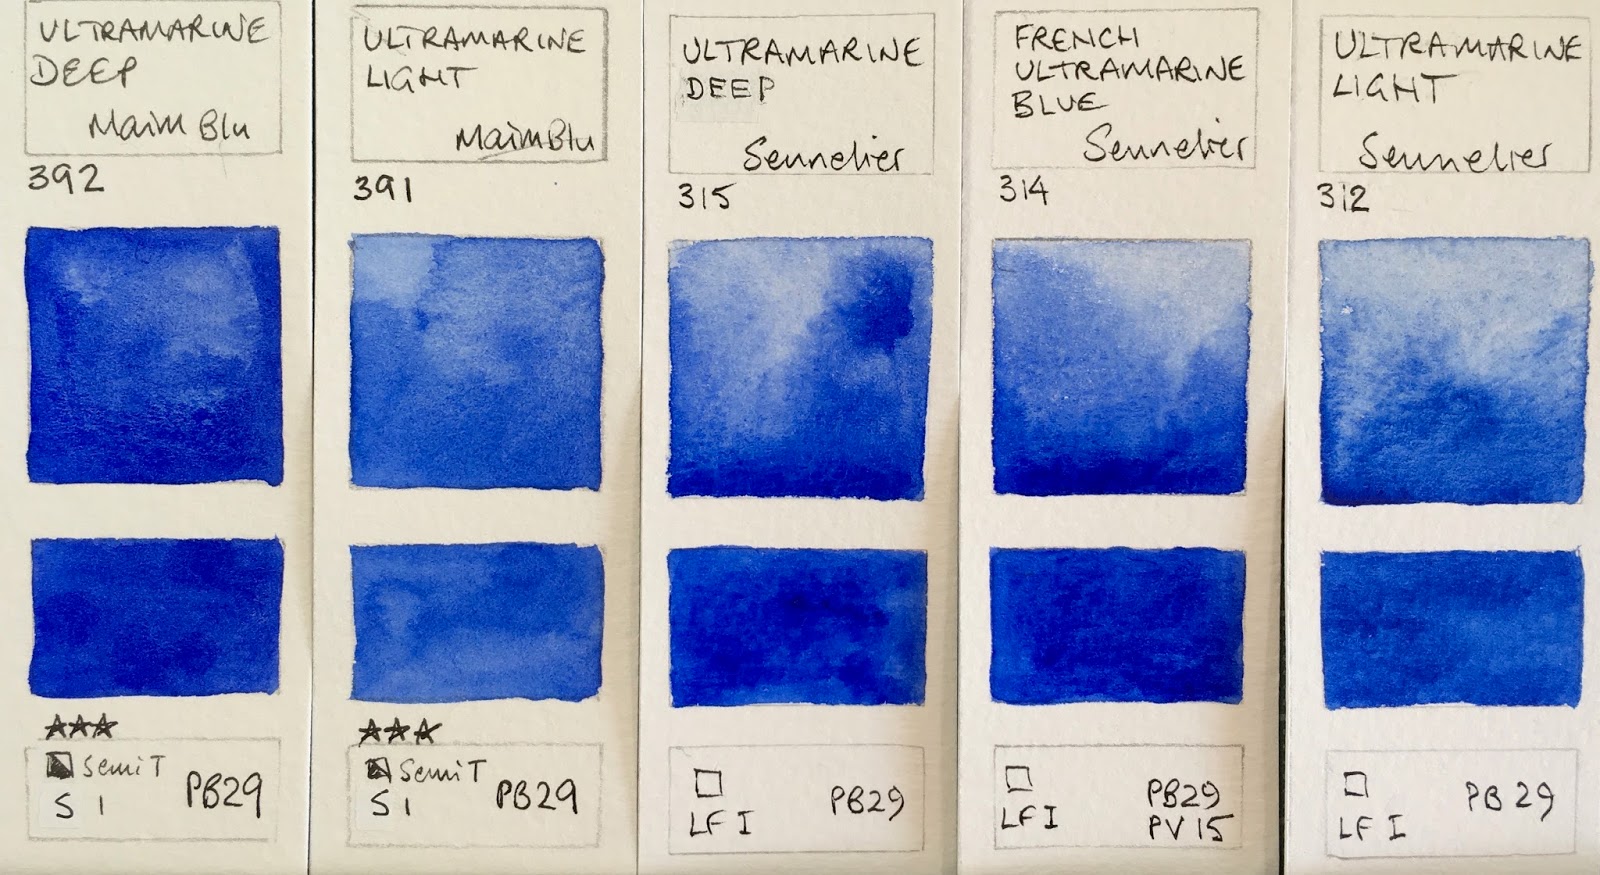 Jane Blundell Artist: Watercolour Comparisons 8 - Blues